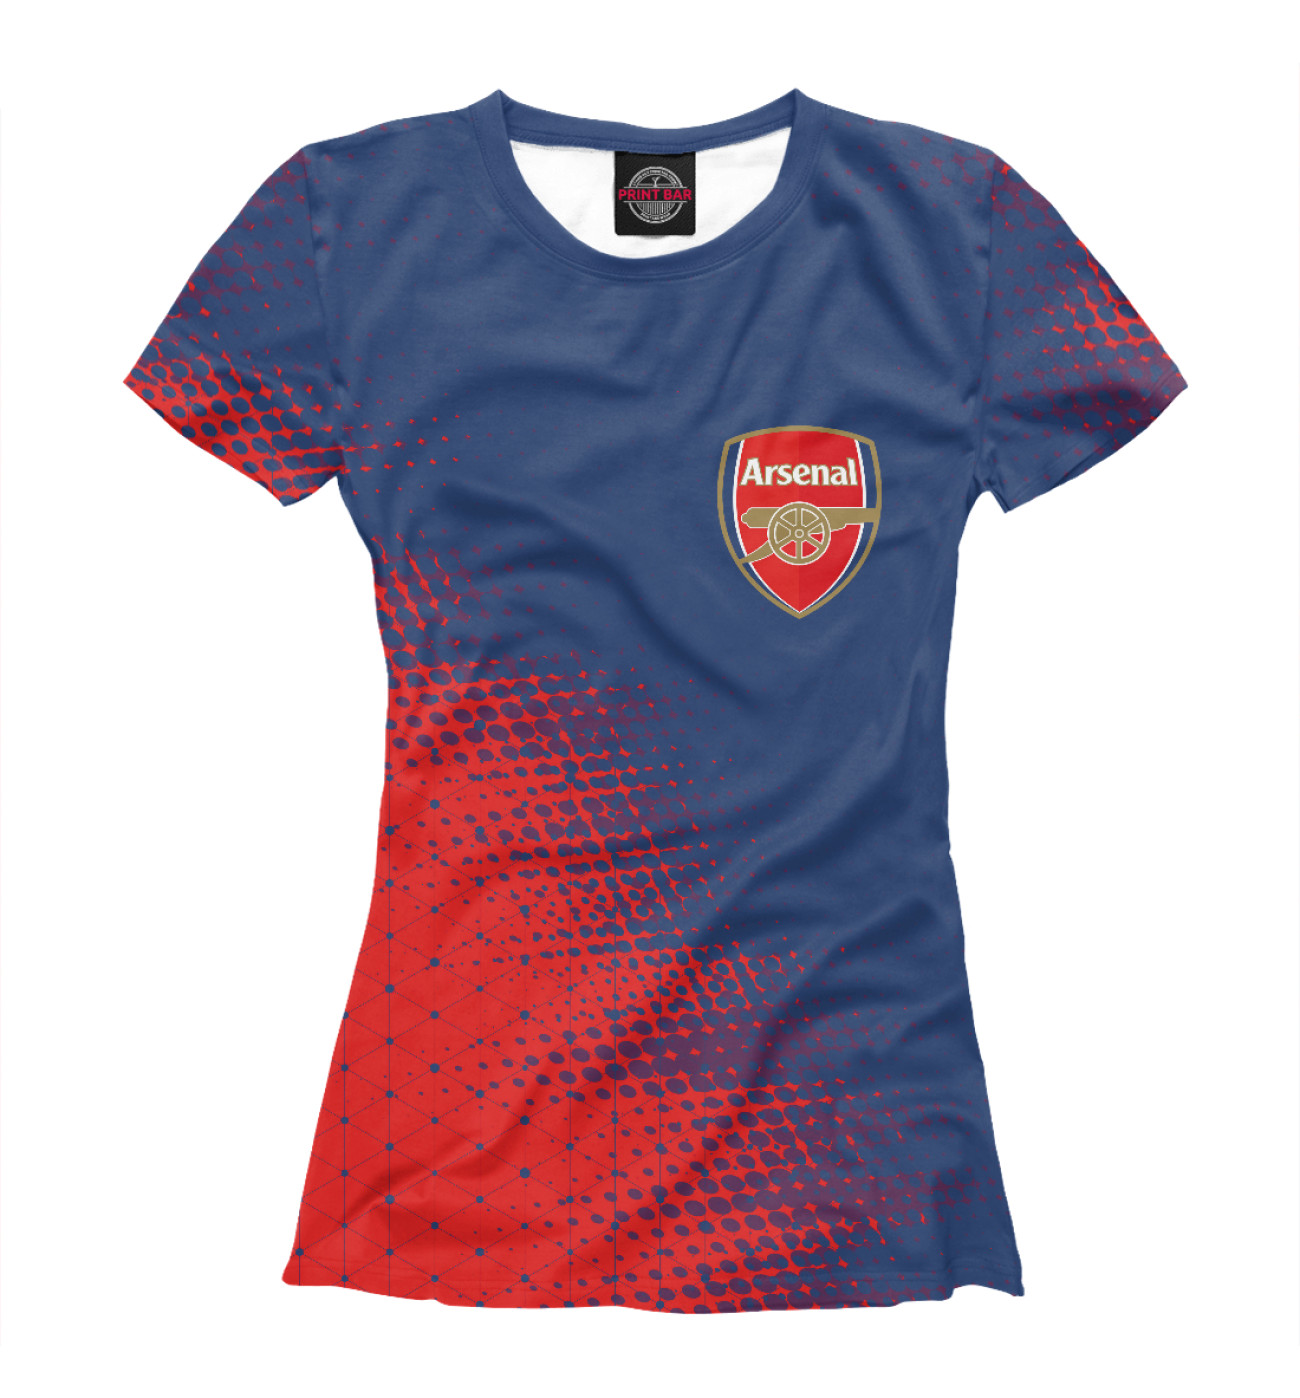 Женская Футболка Arsenal / Арсенал, артикул: ARS-773883-fut-1